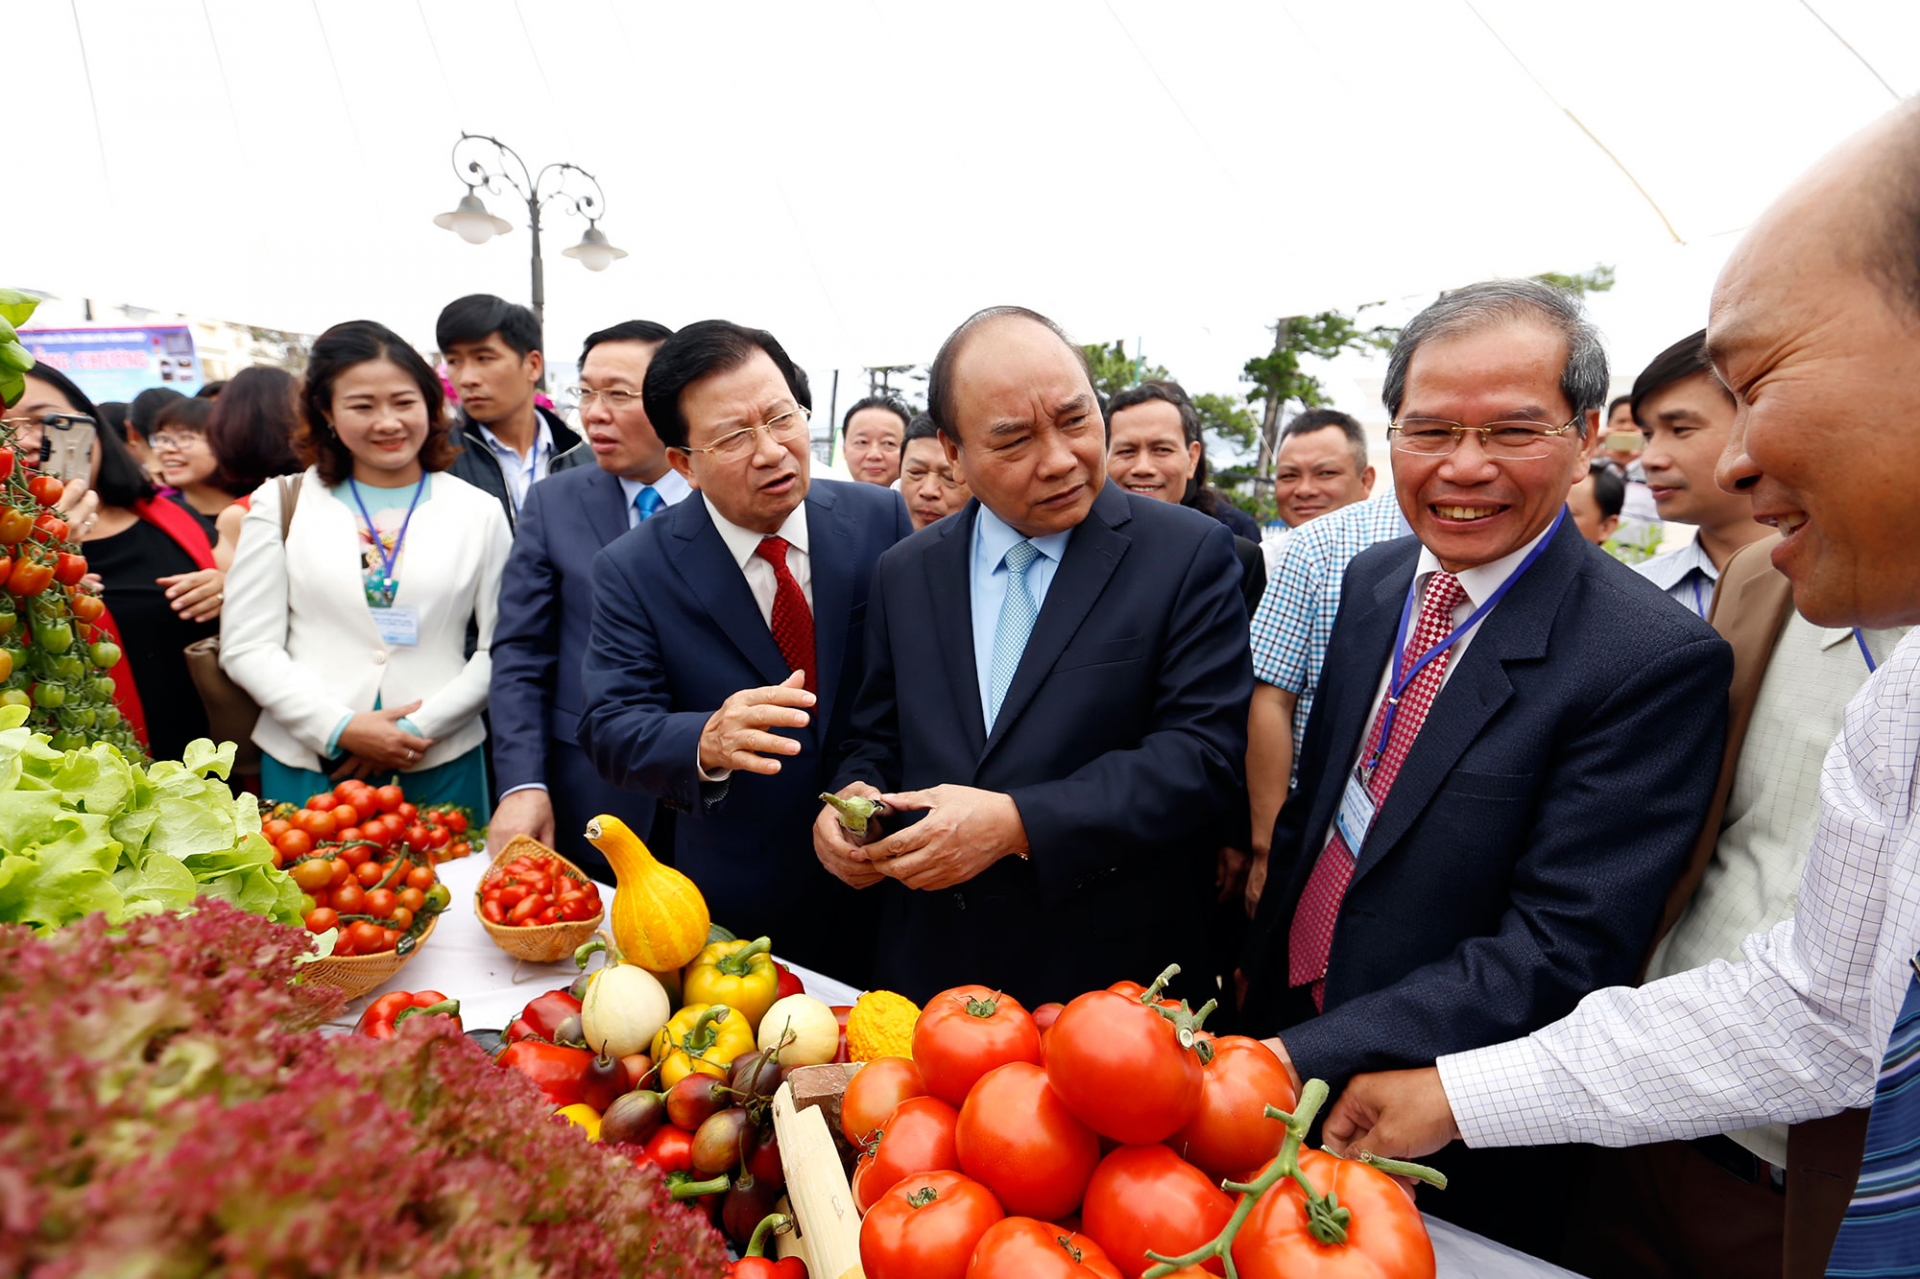 Thủ tướng Nguyễn Xuân Phúc cùng các đại biểu thăm gian hàng trưng bày sản phẩm nông nghiệp của các doanh nghiệp tại Lâm Đồng